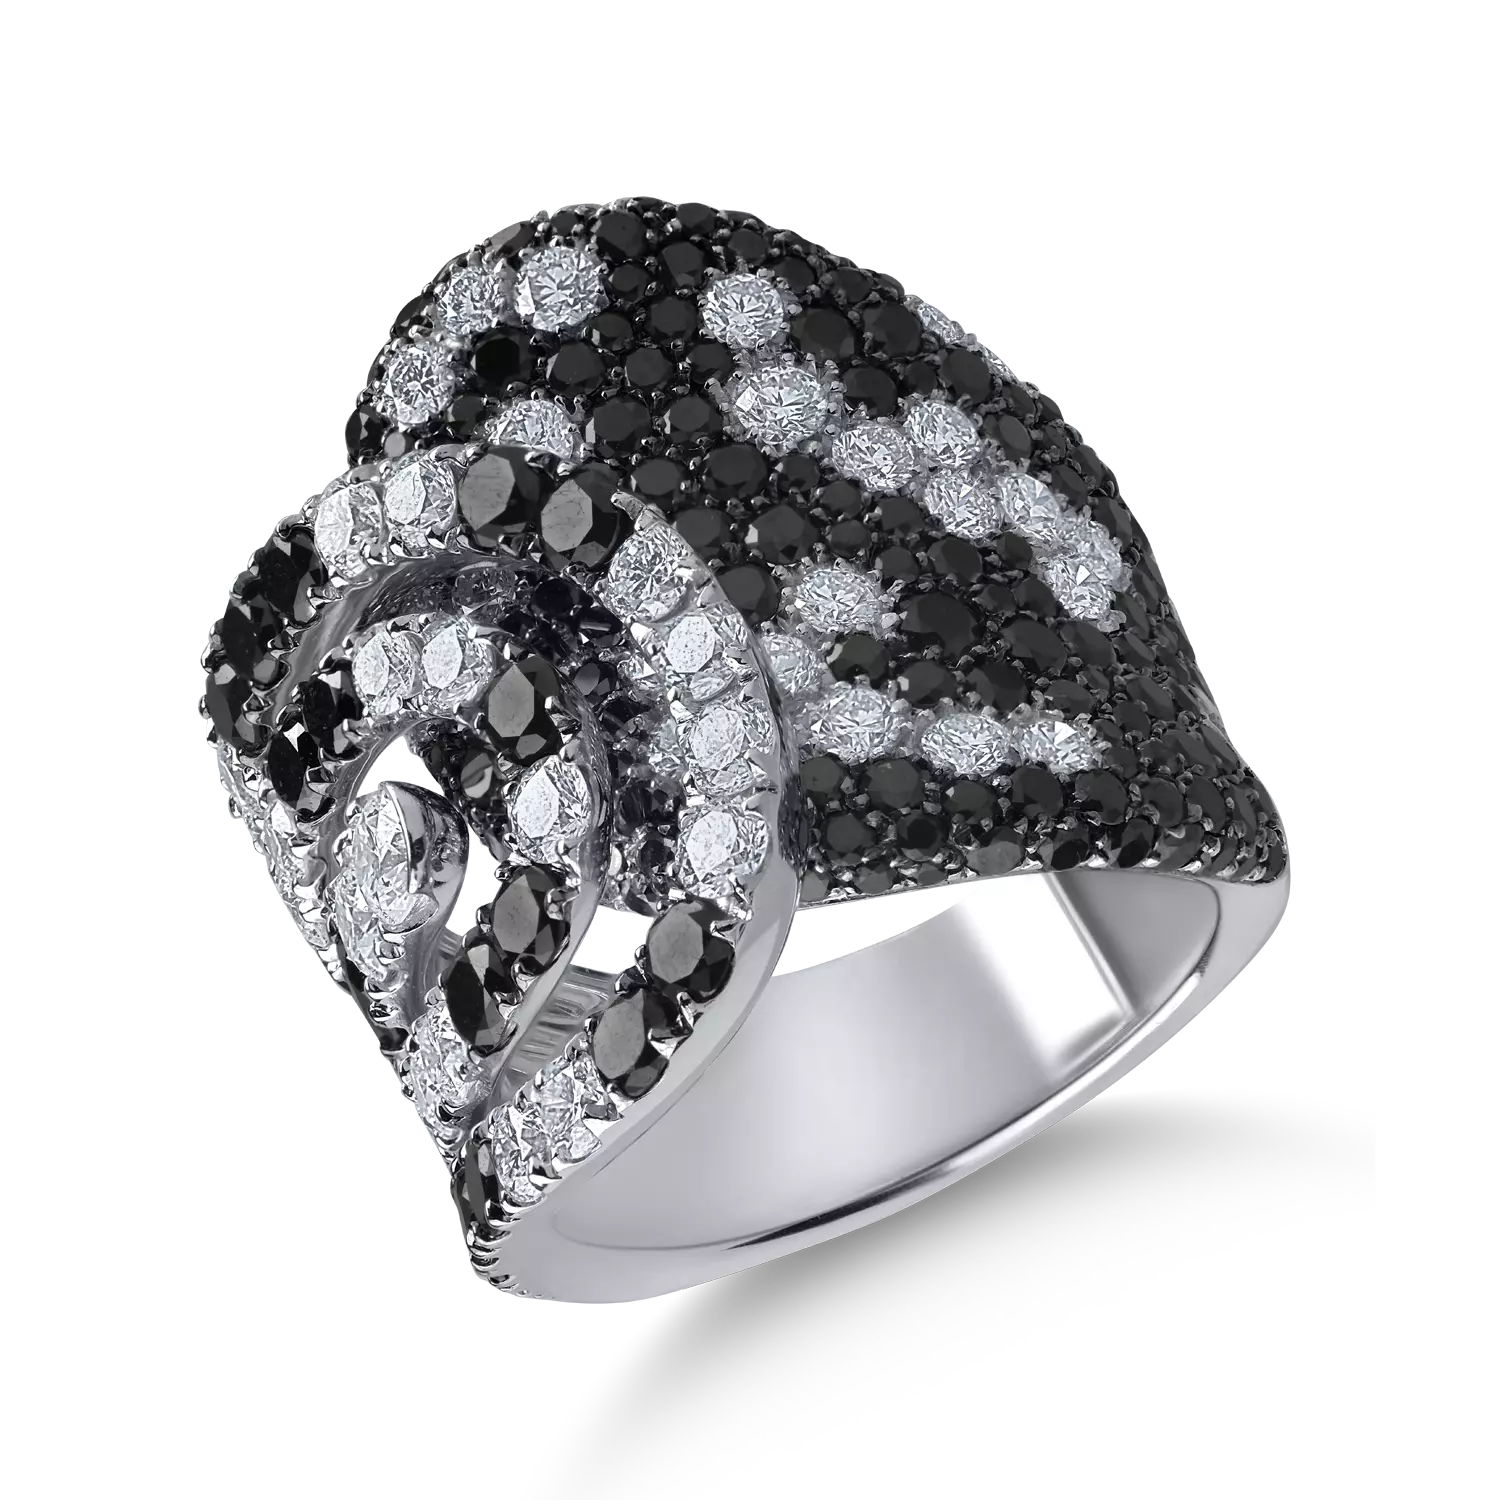 Fehérarany gyűrű 3.12ct tiszta gyémántokkal és 3.95ct fekete gyémántokkal